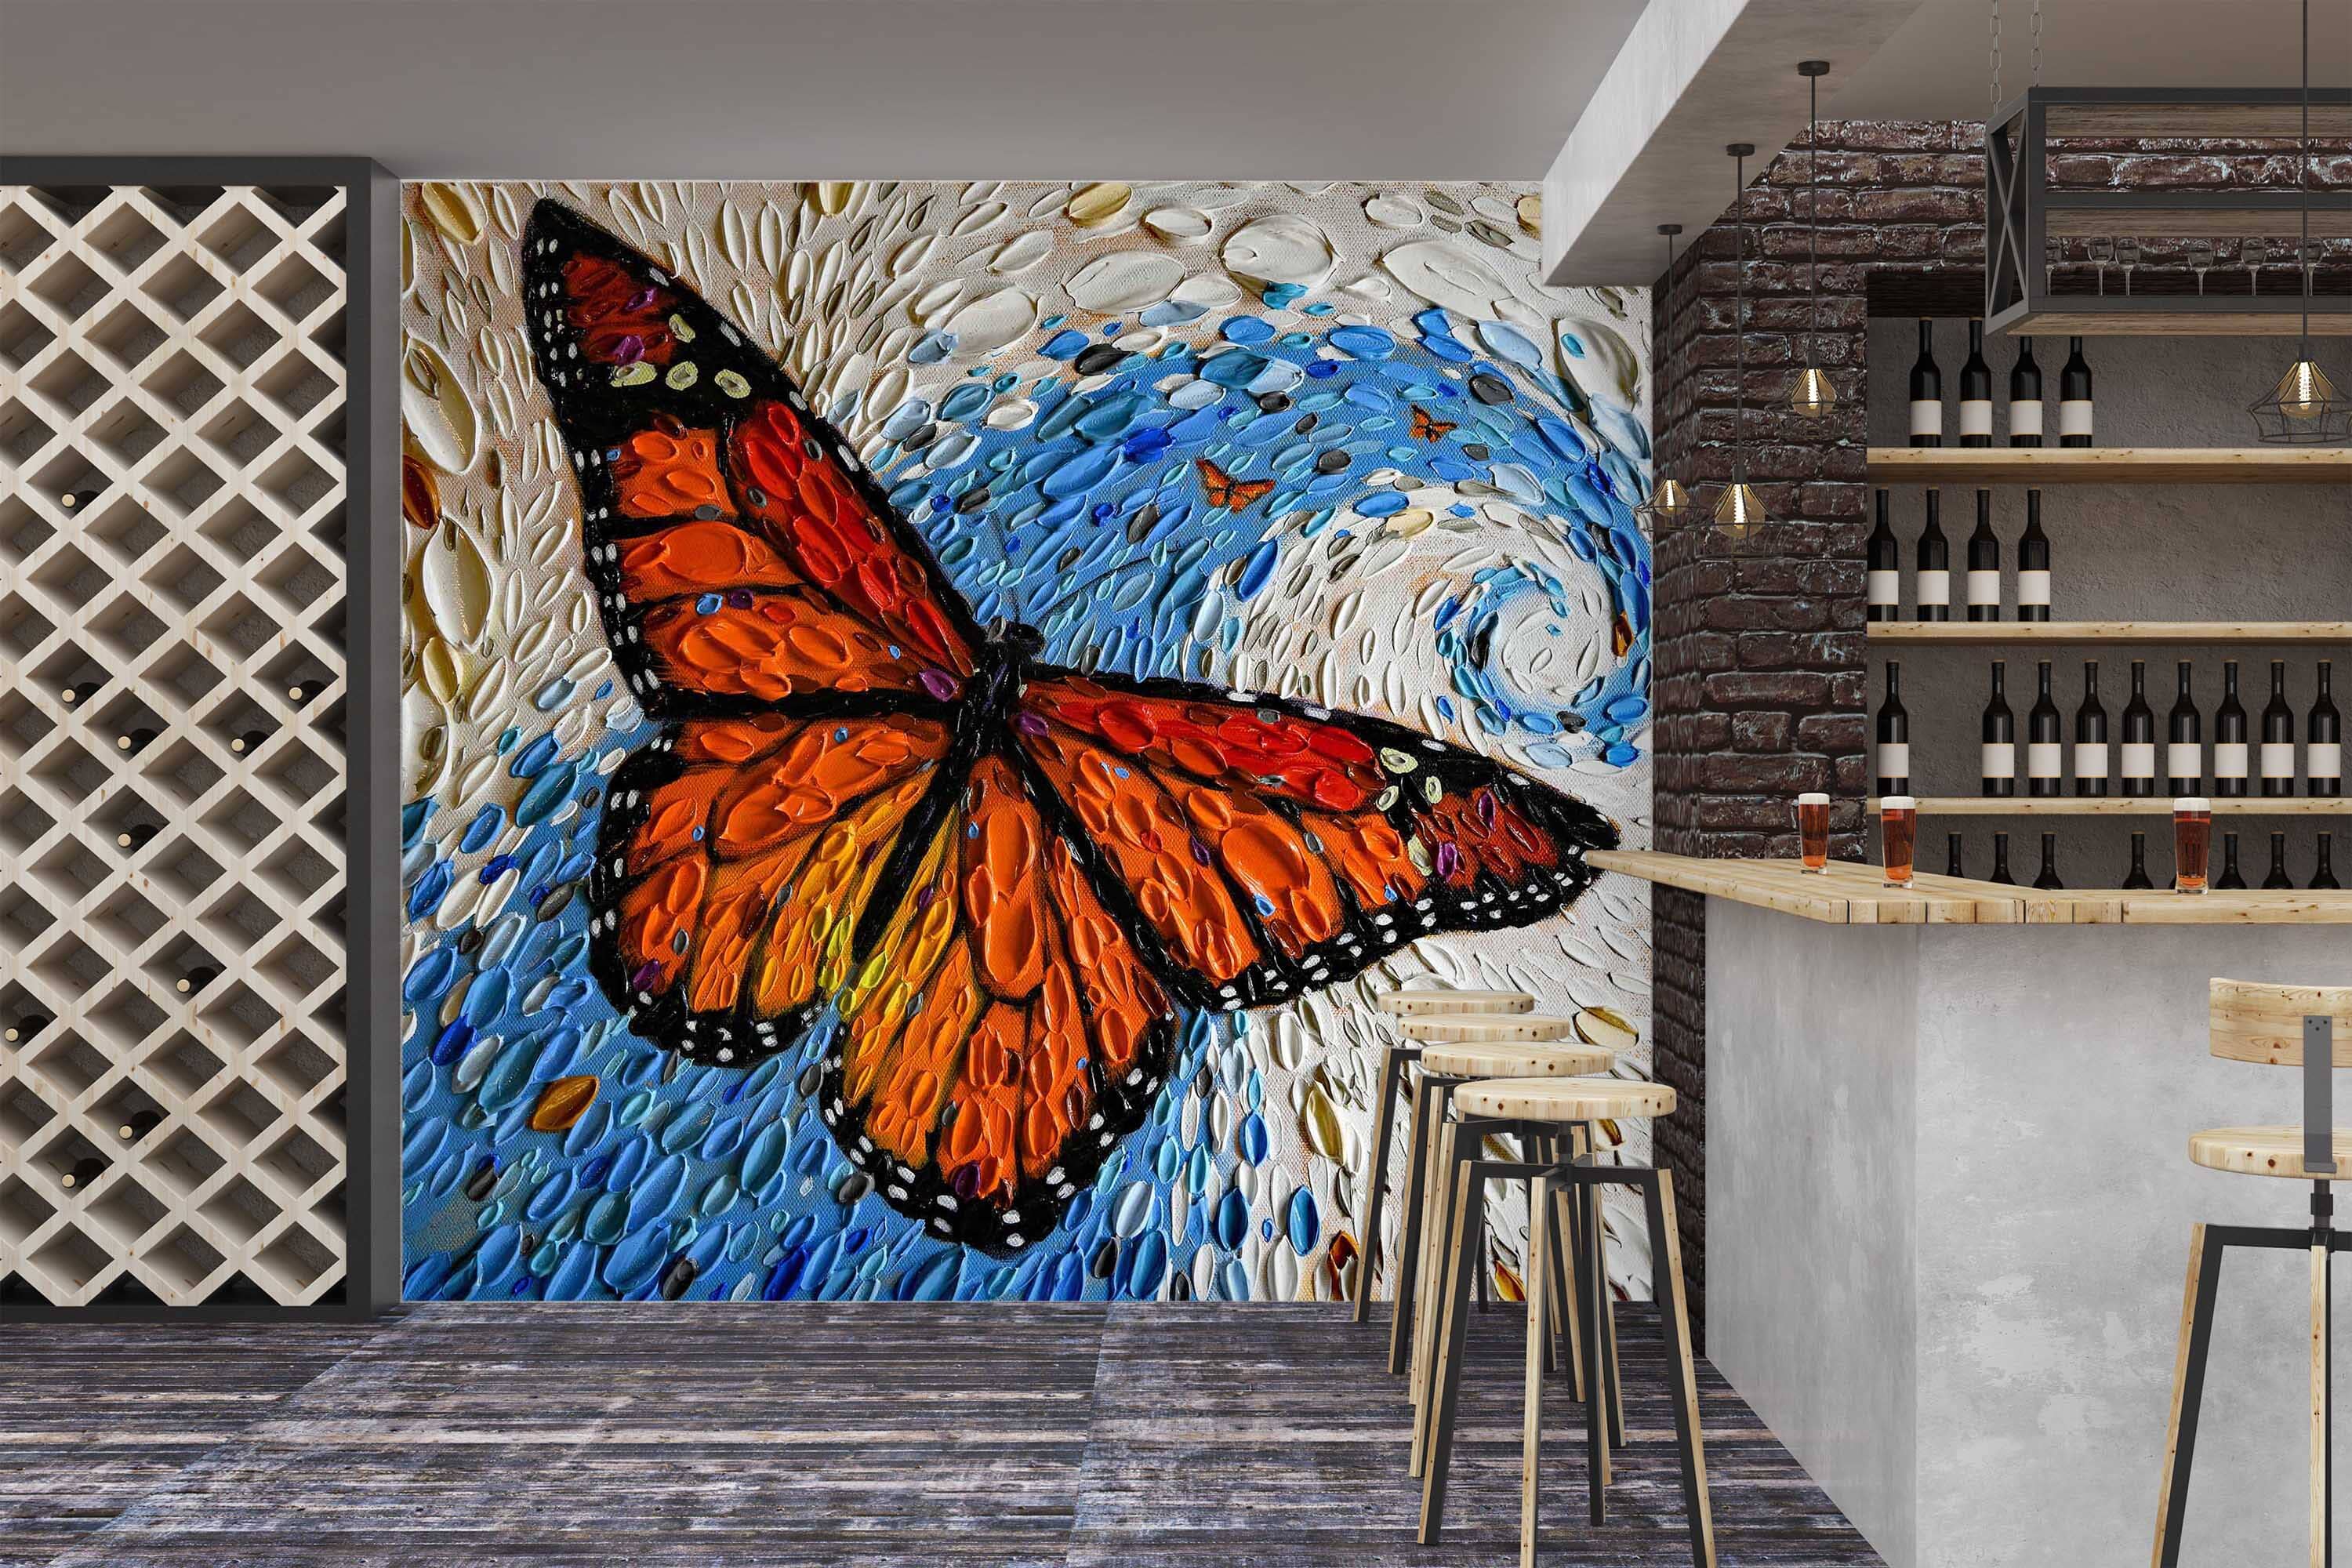 3D Spring Butterfly 1419 Dena Tollefson Wall Mural Wall Murals Wallpaper AJ Wallpaper 2 